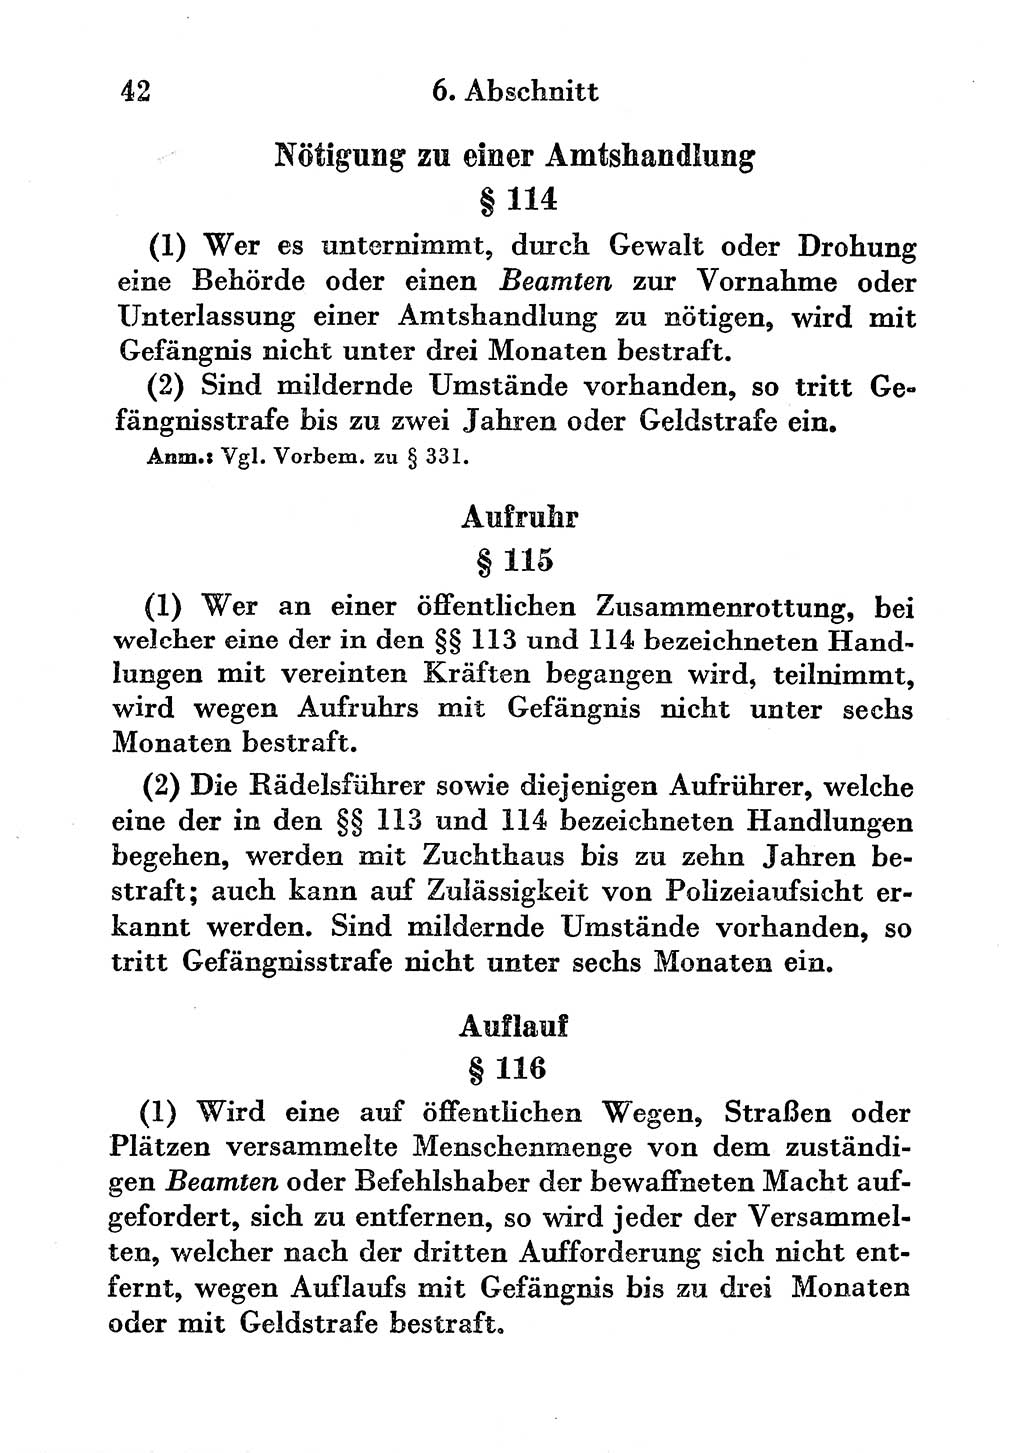 Strafgesetzbuch (StGB) und andere Strafgesetze [Deutsche Demokratische Republik (DDR)] 1956, Seite 42 (StGB Strafges. DDR 1956, S. 42)